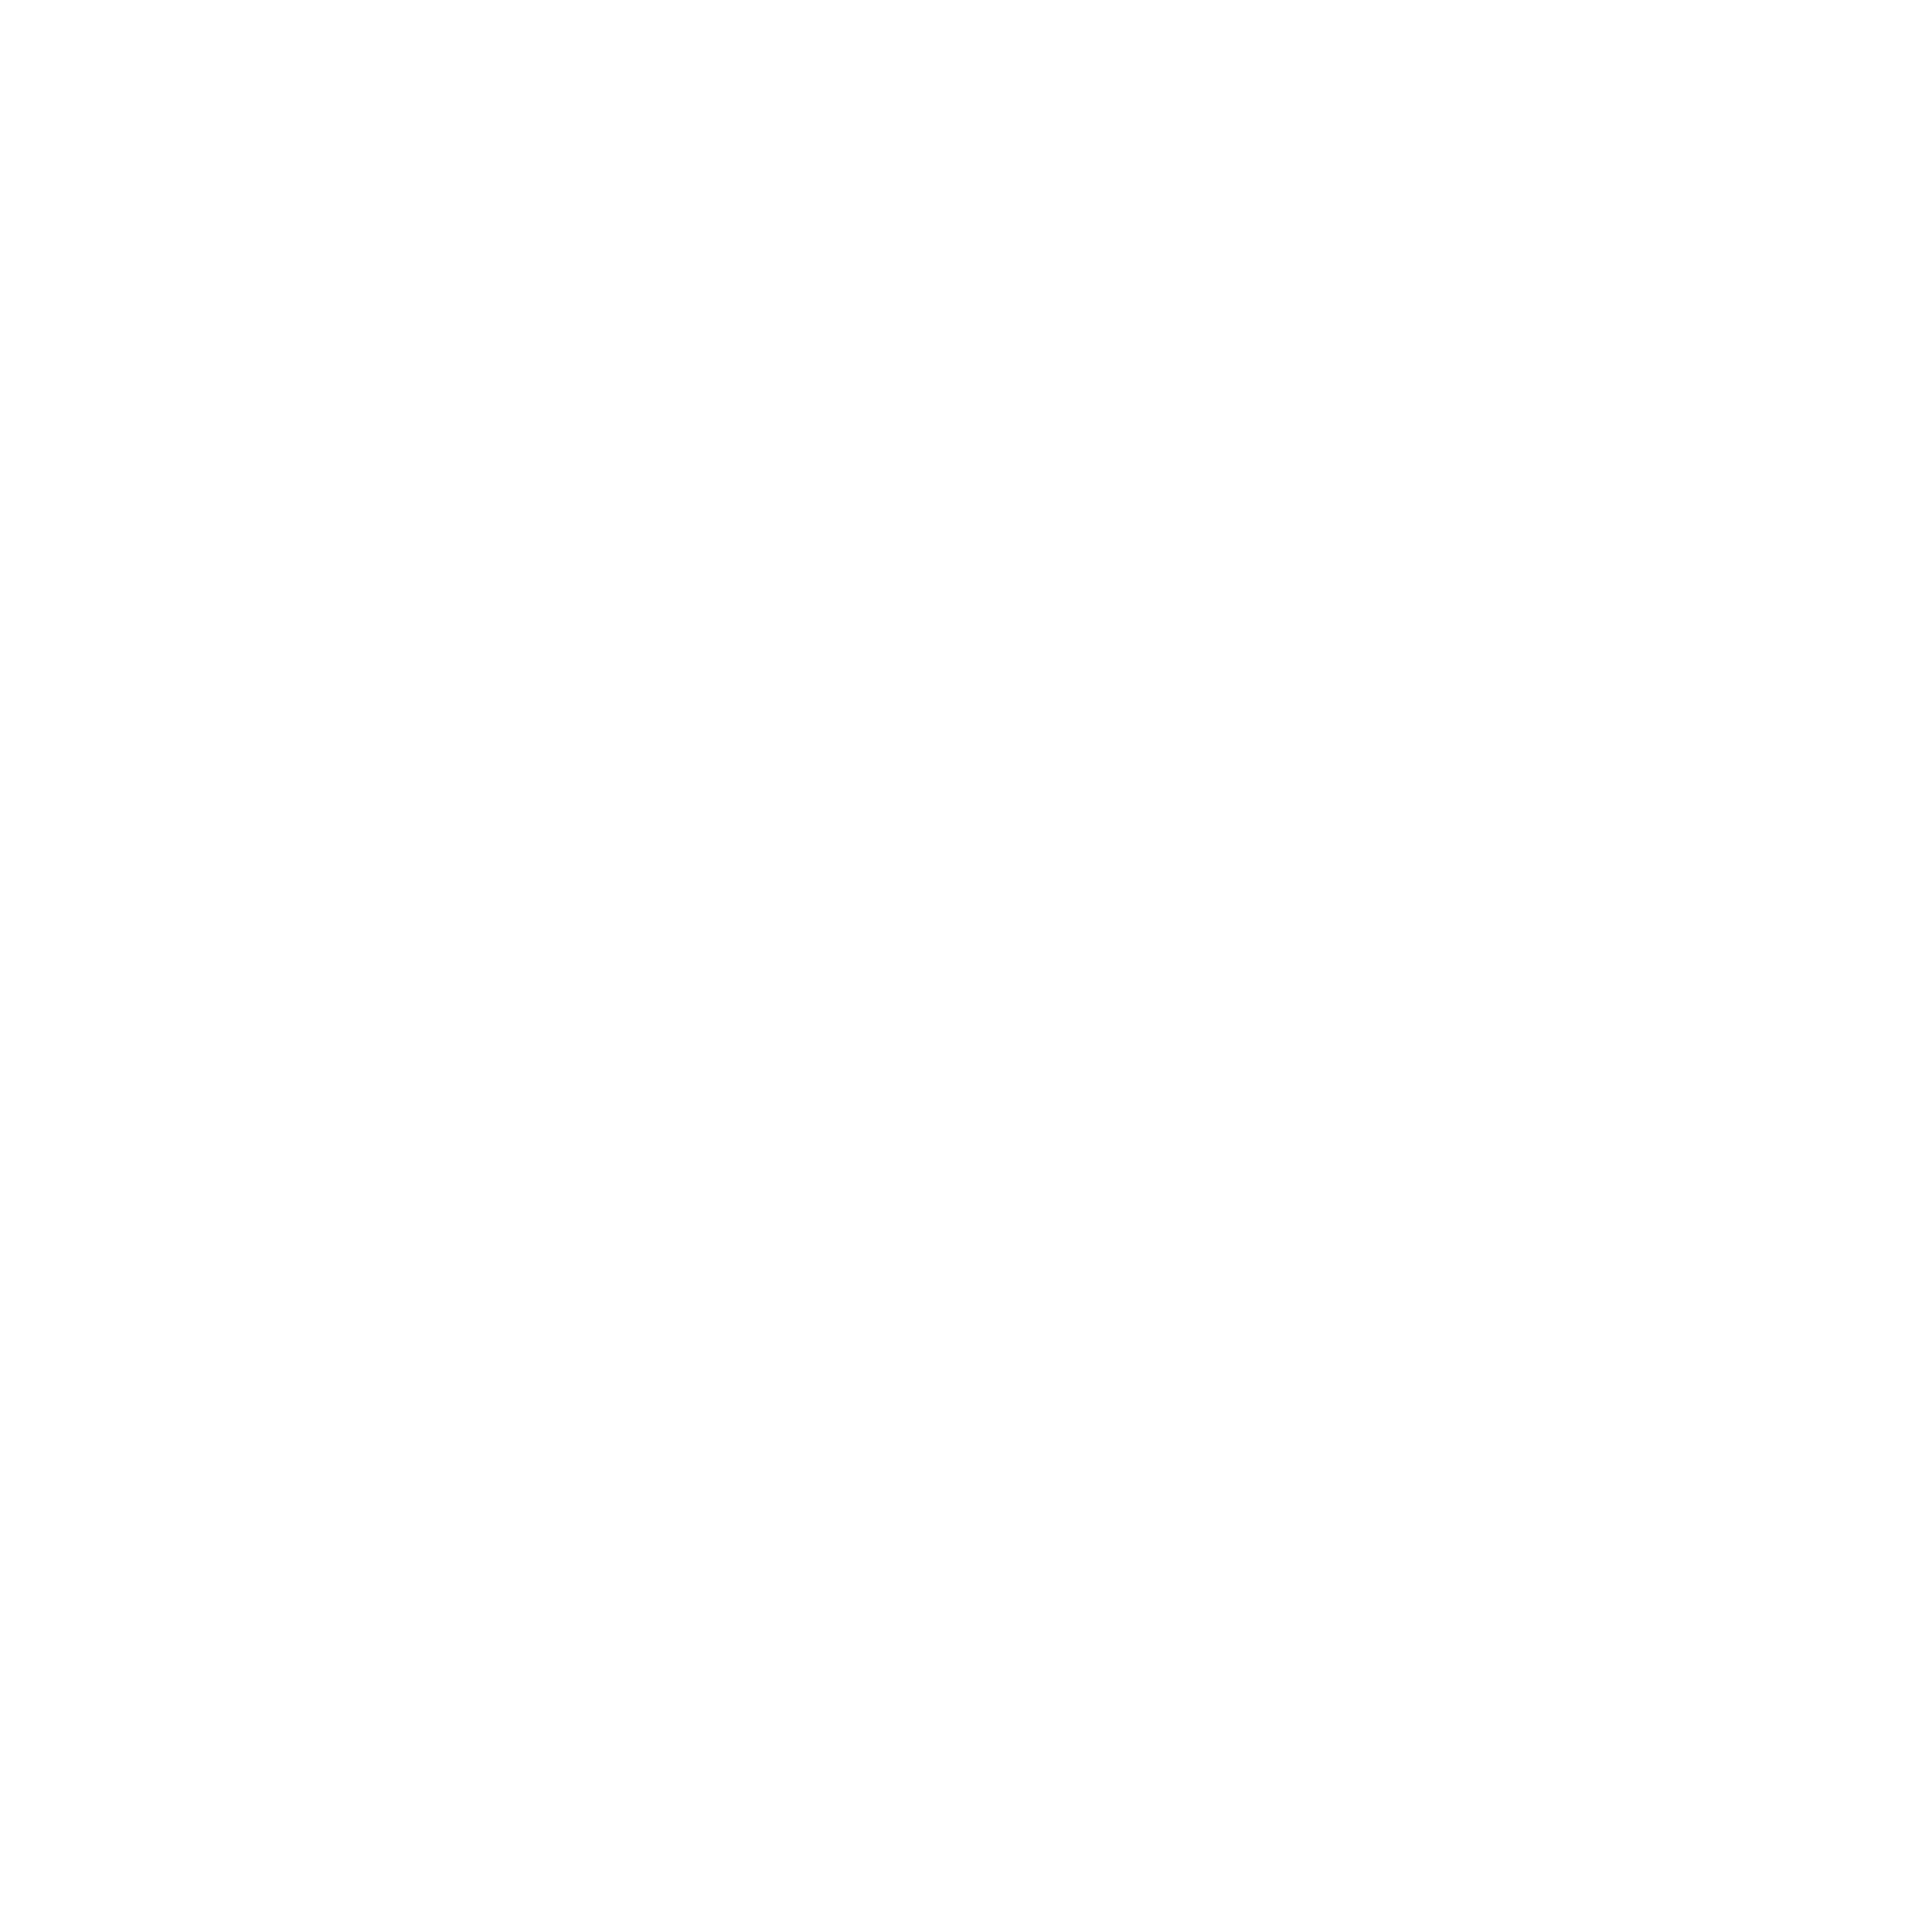 V1 Joburg Logos for Web 2022 Ziyanda ntshona keylime